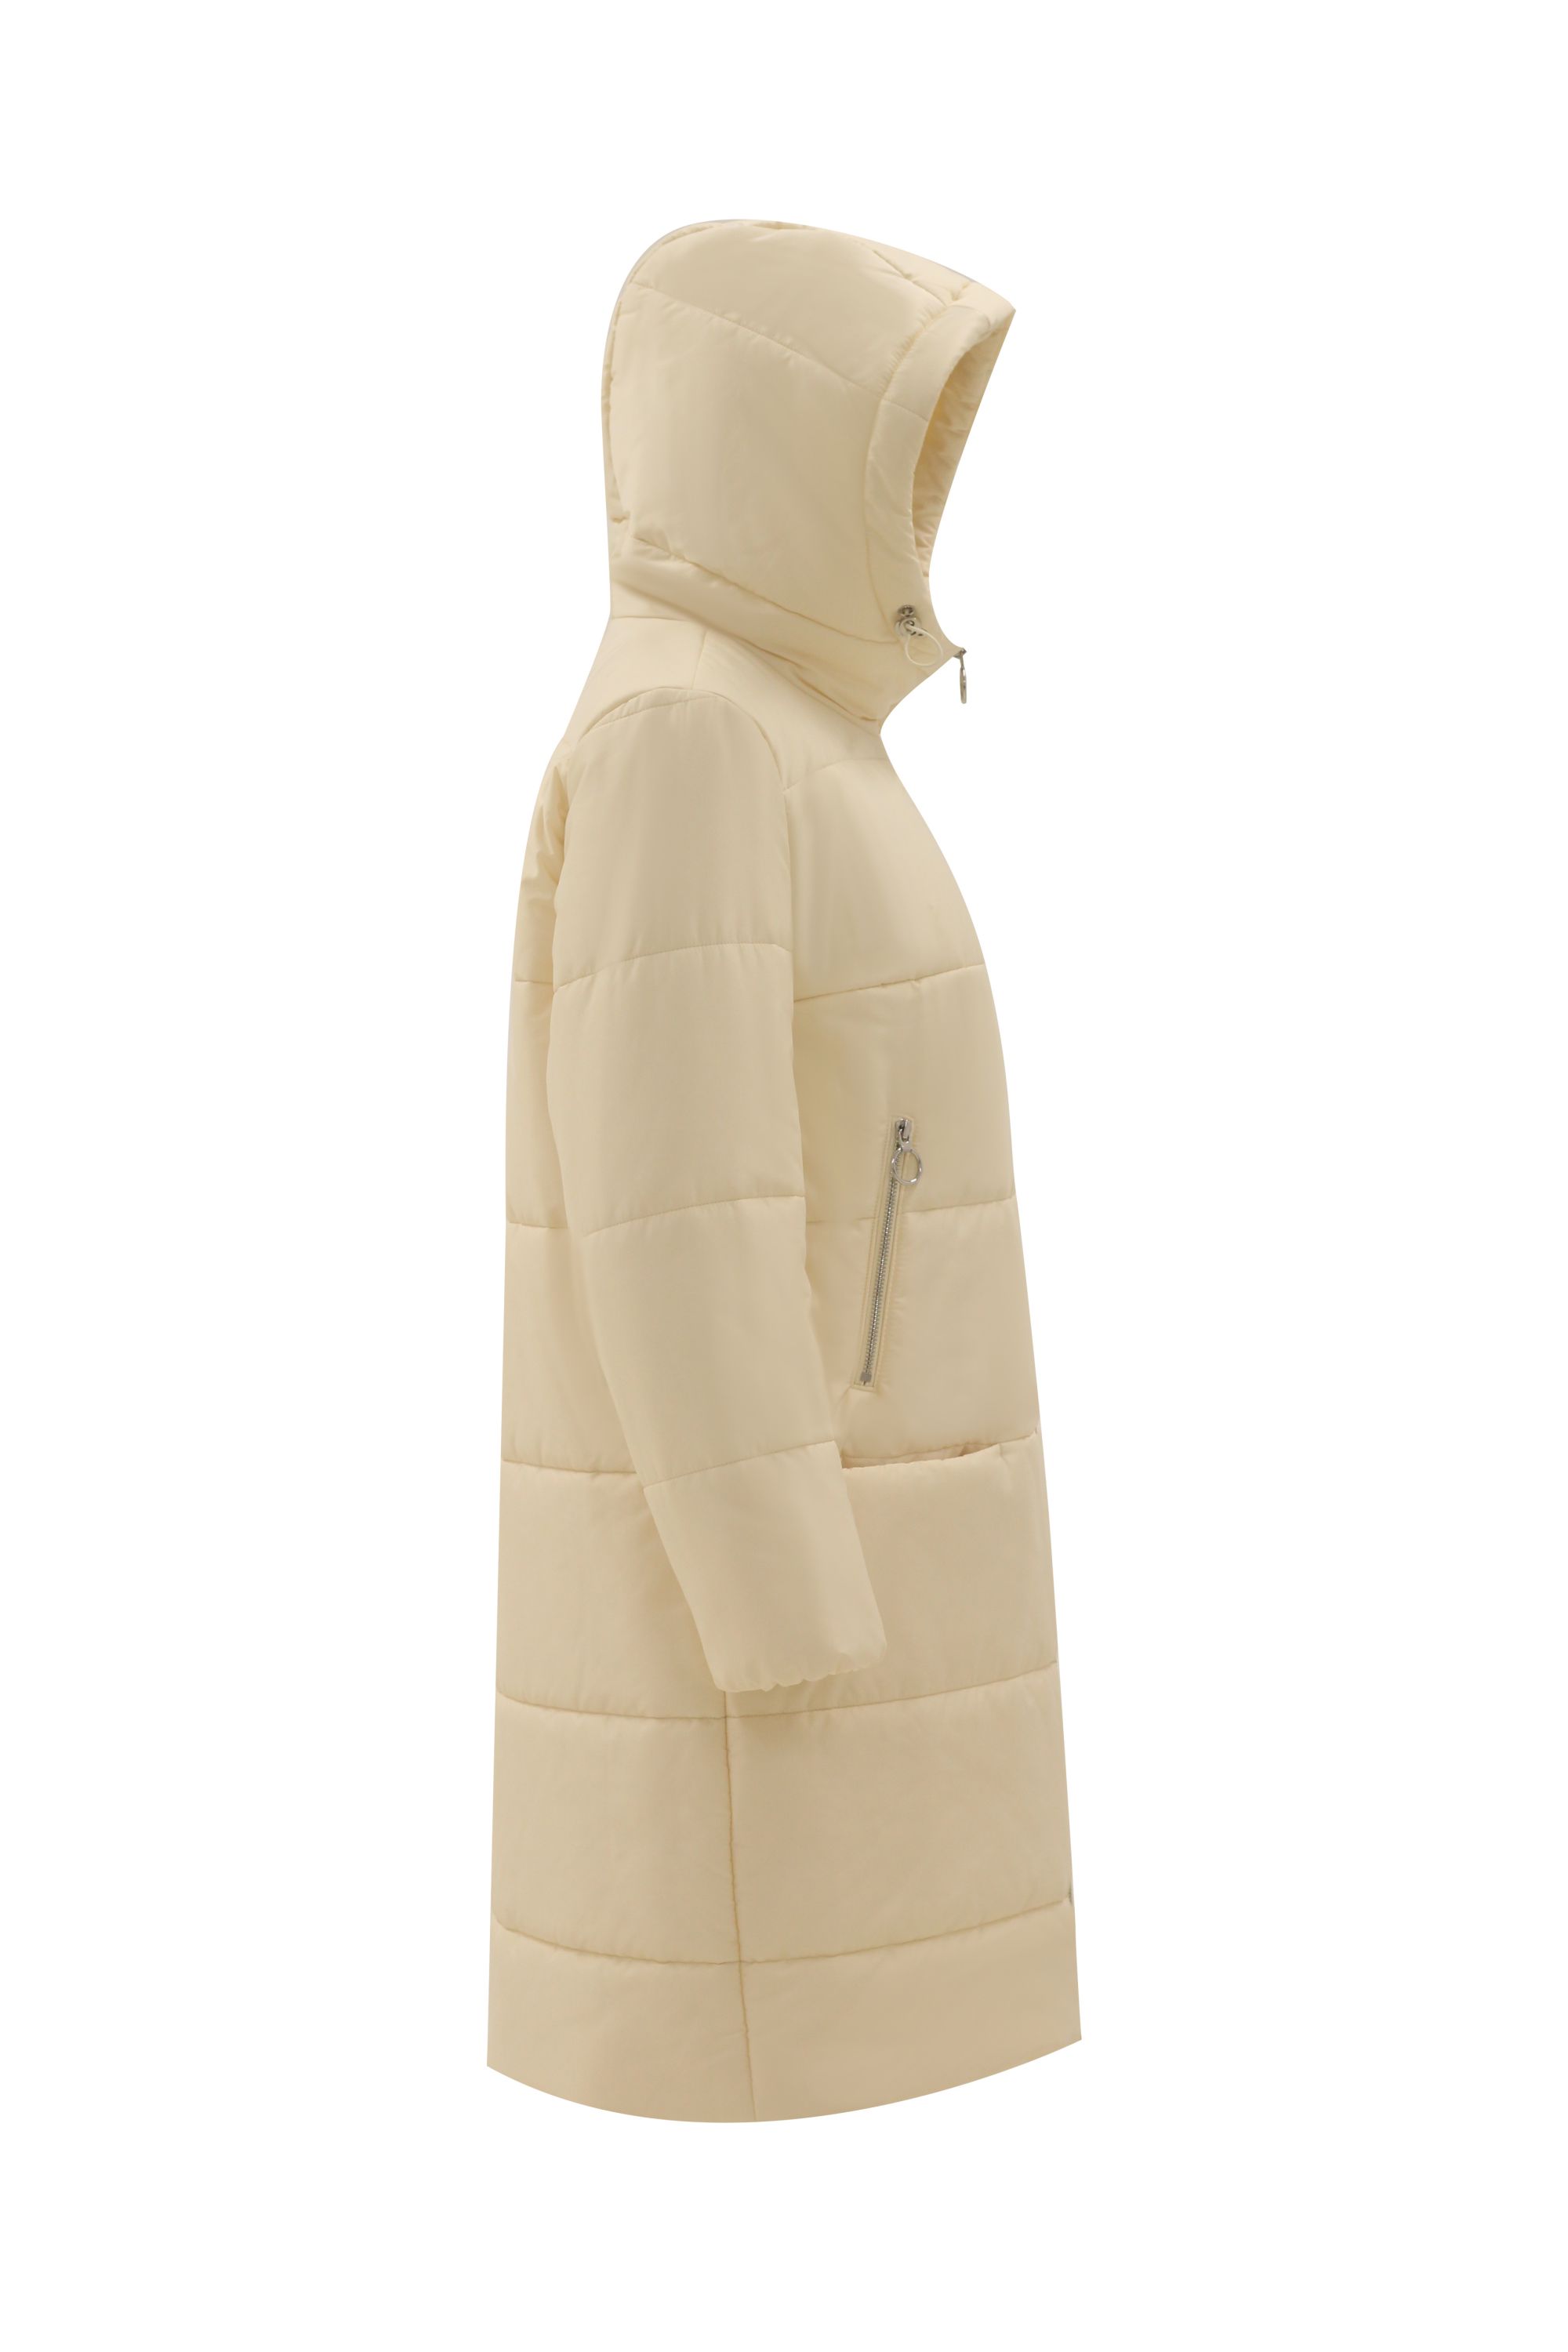 Пальто женское плащевое утепленное 5-12382-1. Фото 2.